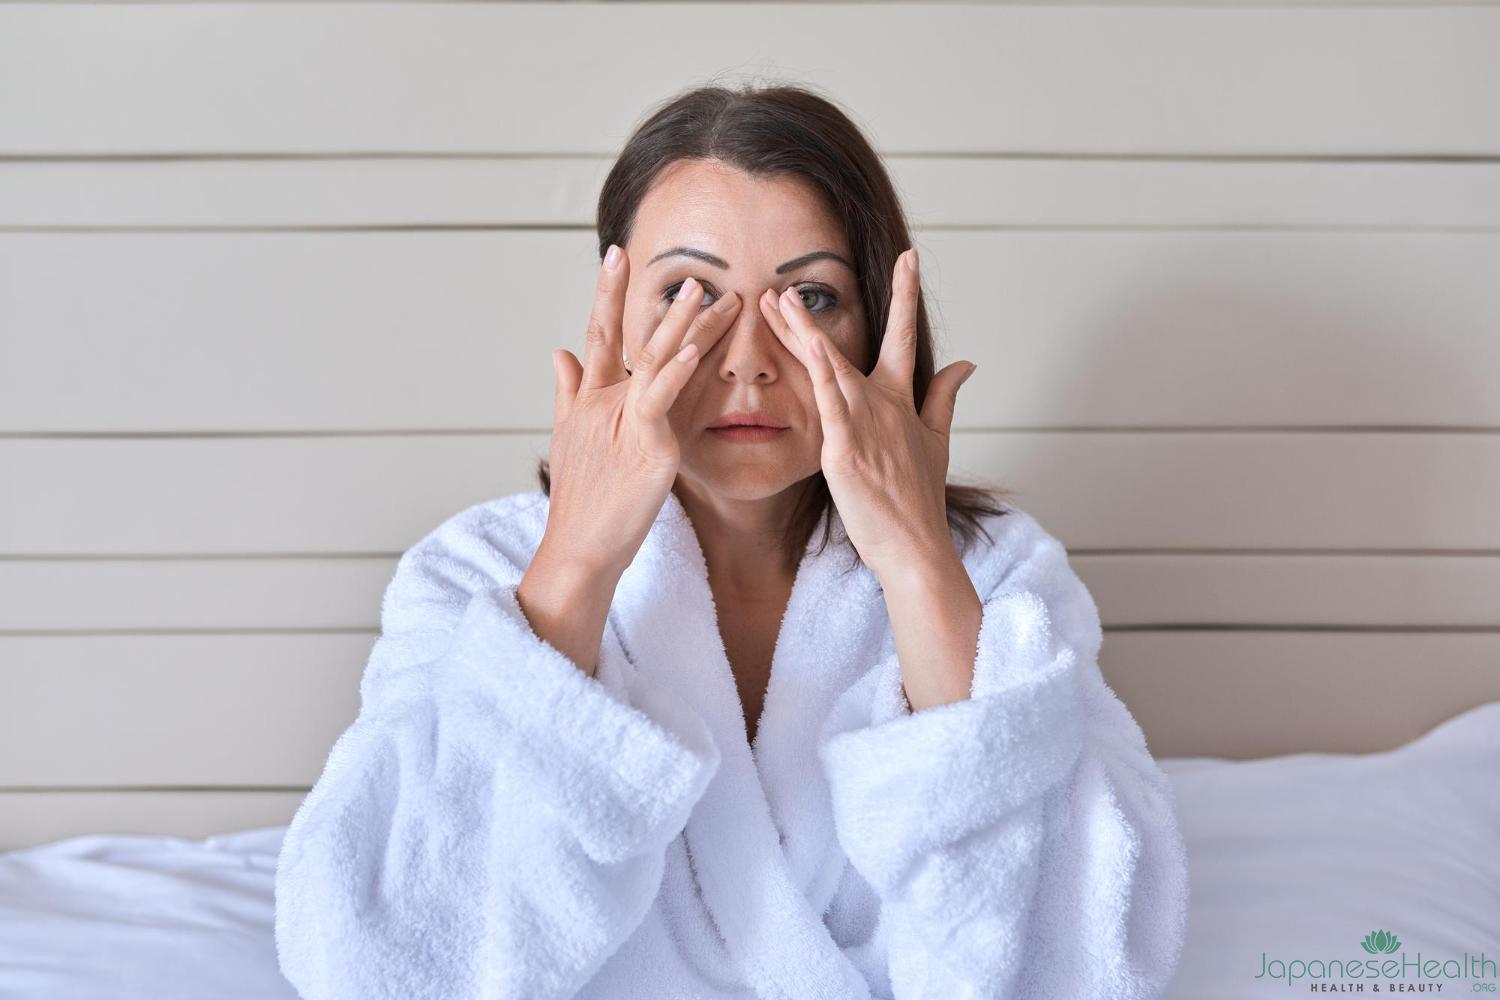 目の下のたるみは、加齢やストレス、睡眠不足などの要因で起こる一般的な美容問題です。